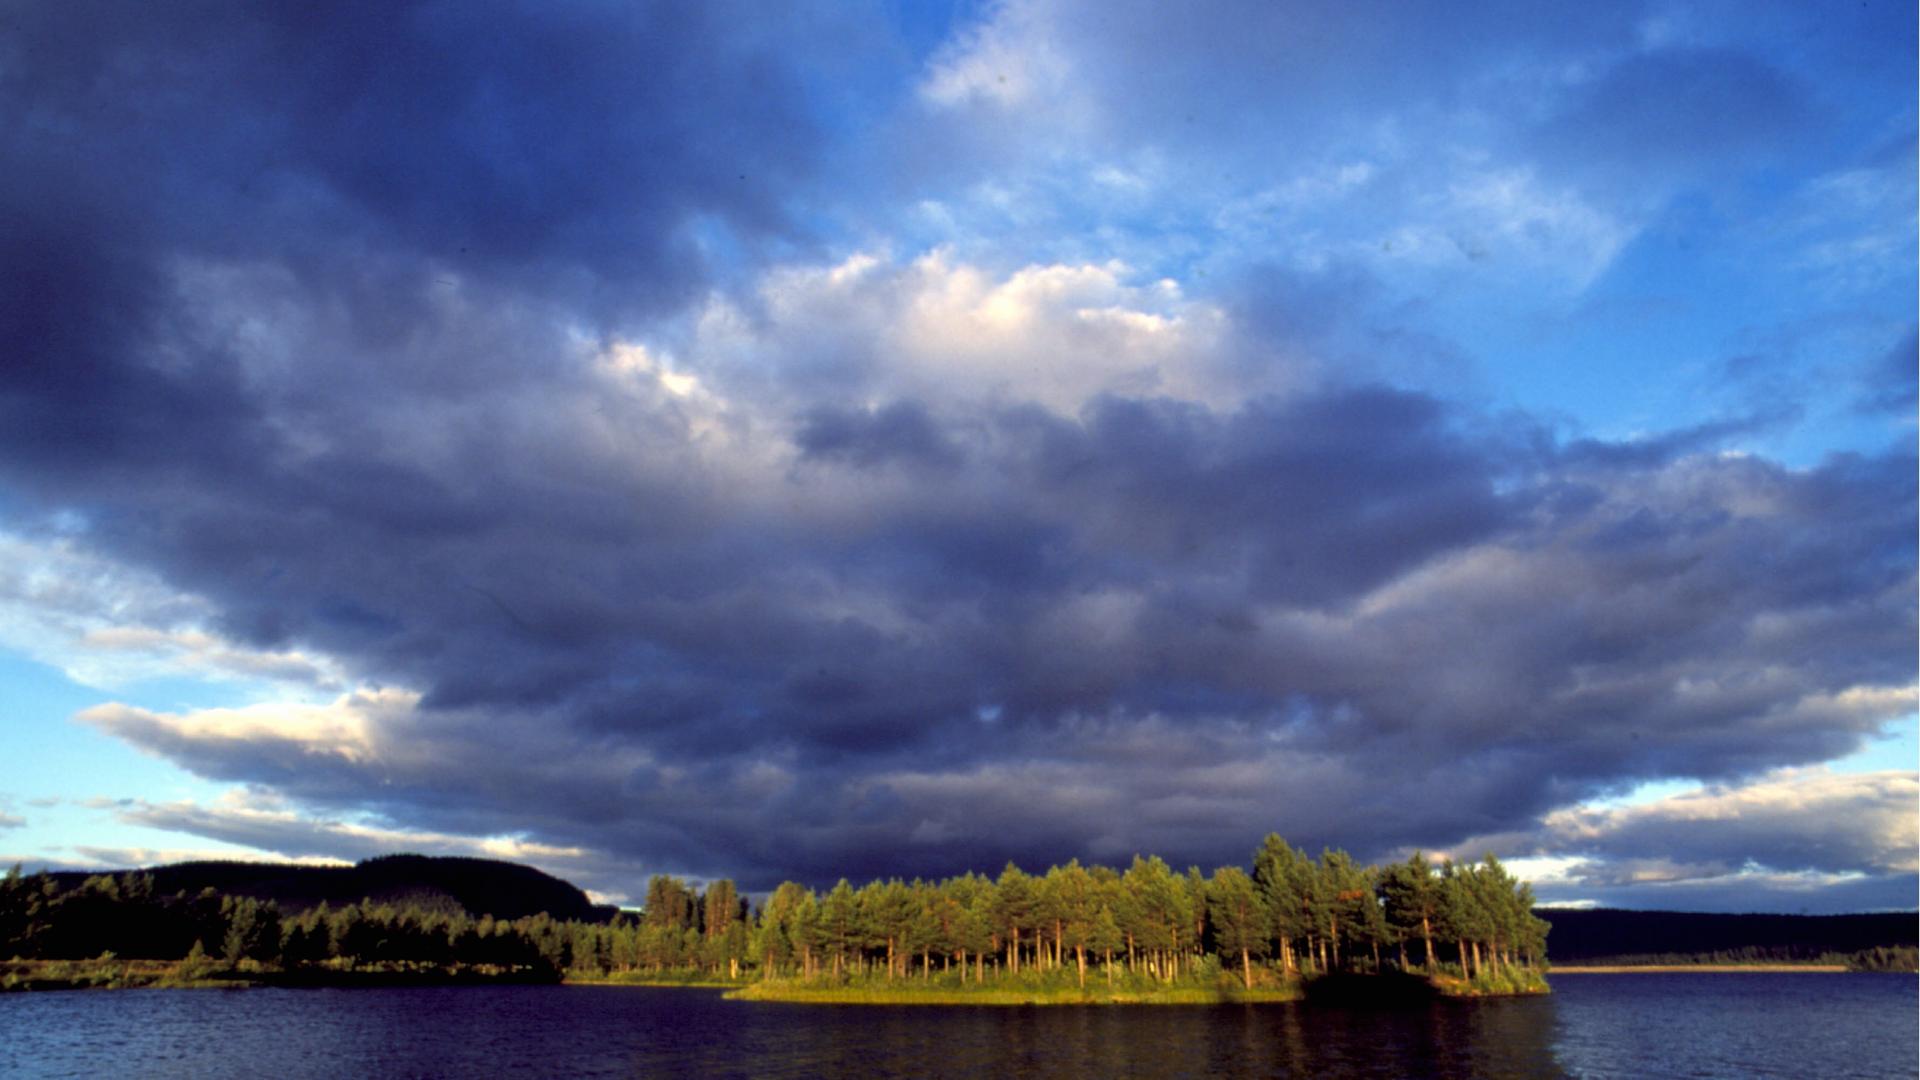 Über einem von Nadelbäumen gesäumten See türmen sich dunkle Wolken.